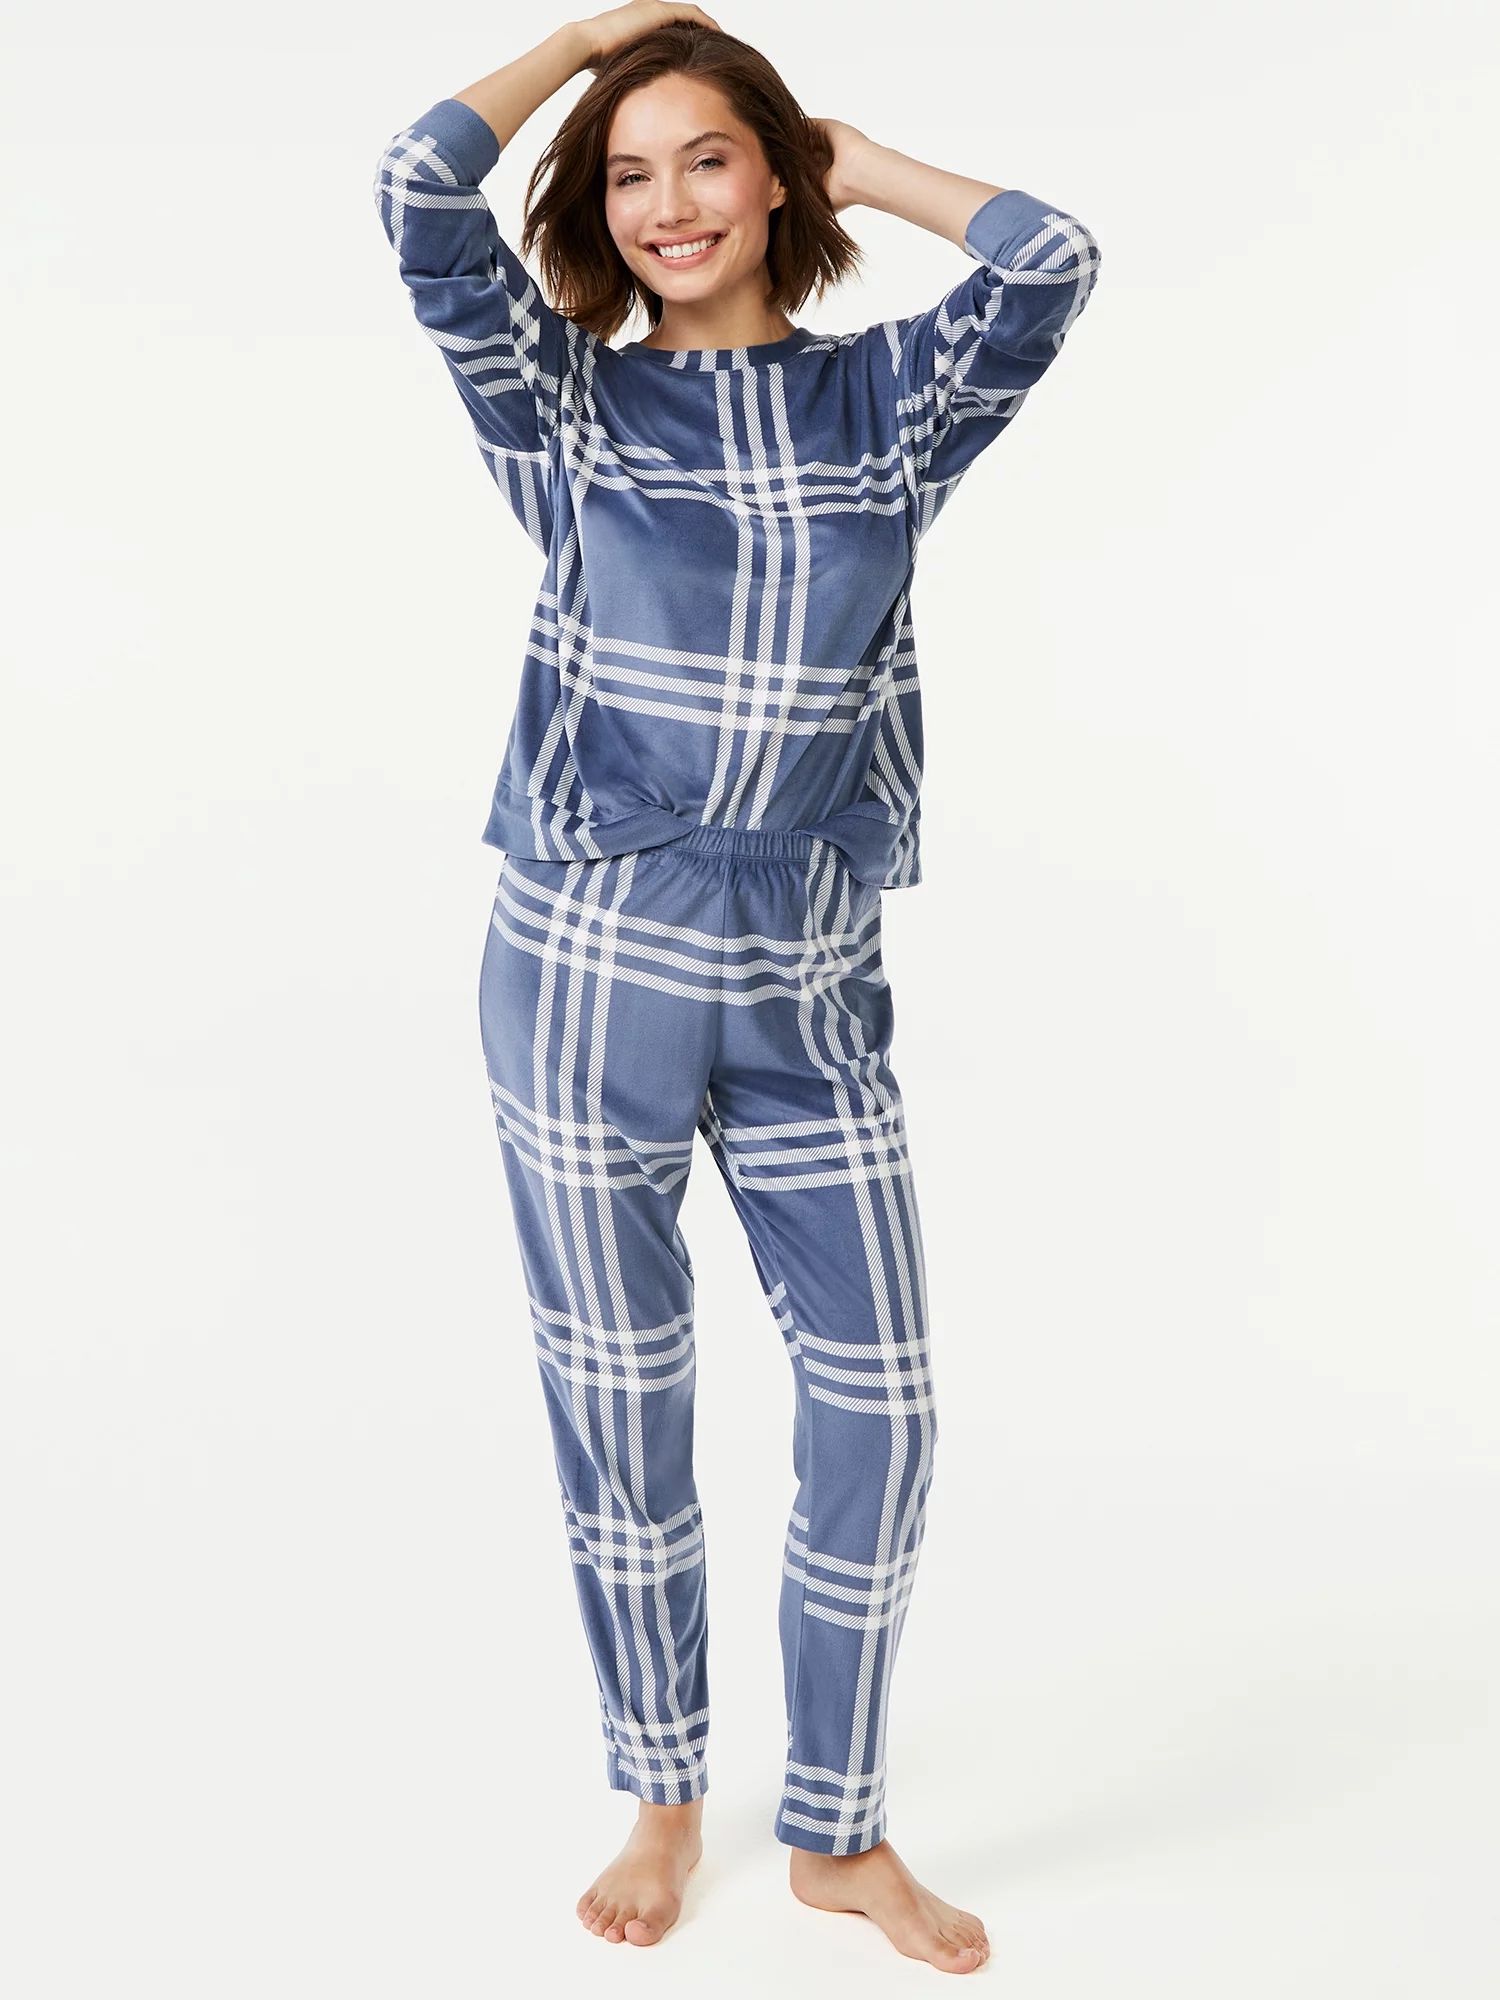 Joyspun Women's Velour Top and Sleep Pant Pajama Set, 2-Piece, Sizes up to 3X - Walmart.com | Walmart (US)